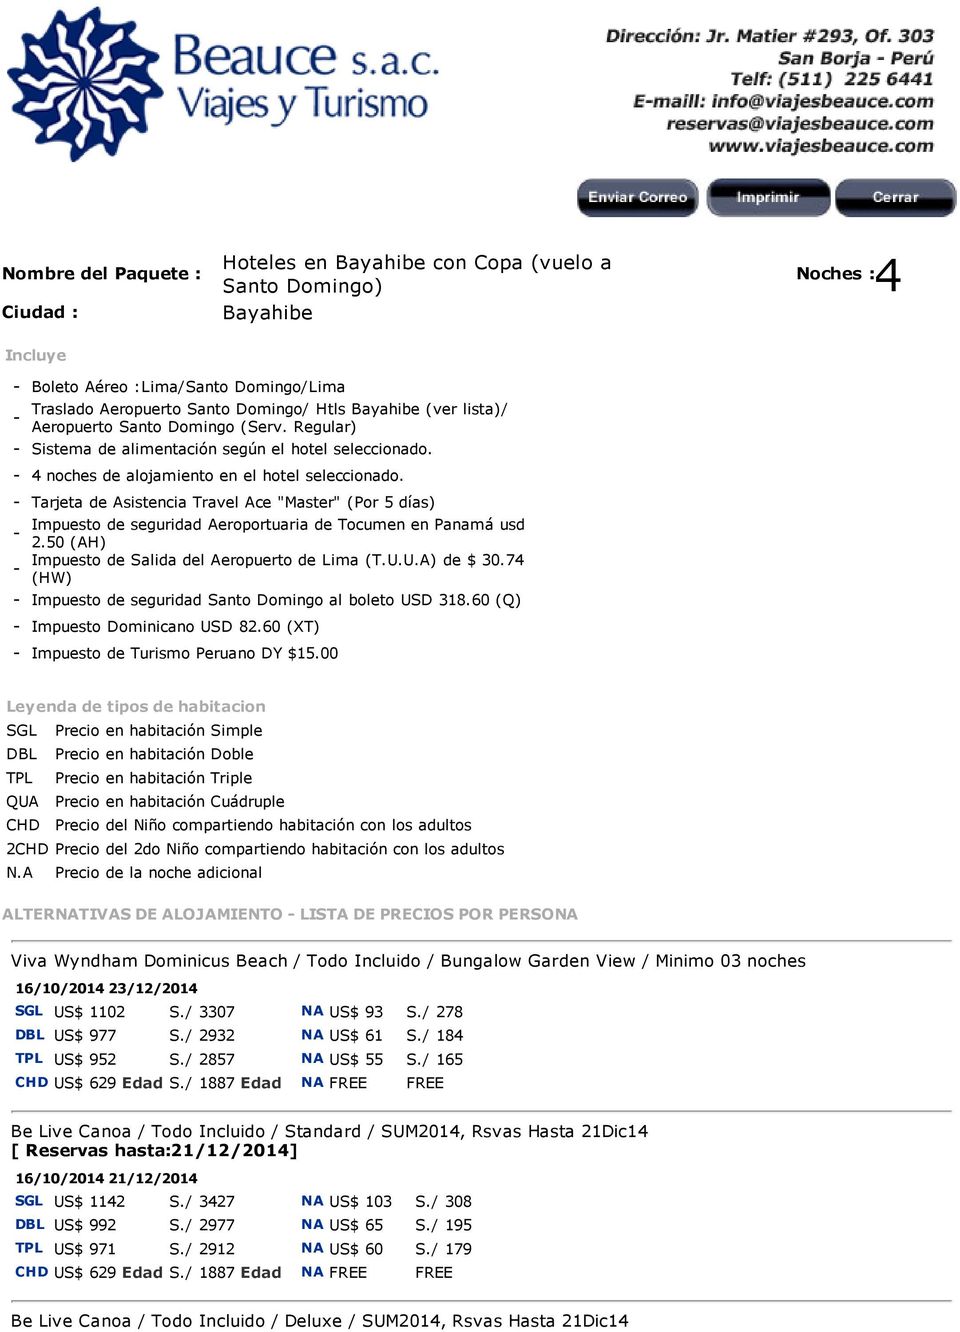 - Tarjeta de Asistencia Travel Ace "Master" (Por 5 días) Impuesto de seguridad Aeroportuaria de Tocumen en Panamá usd - 2.50 (AH) Impuesto de Salida del Aeropuerto de Lima (T.U.U.A) de $ 30.